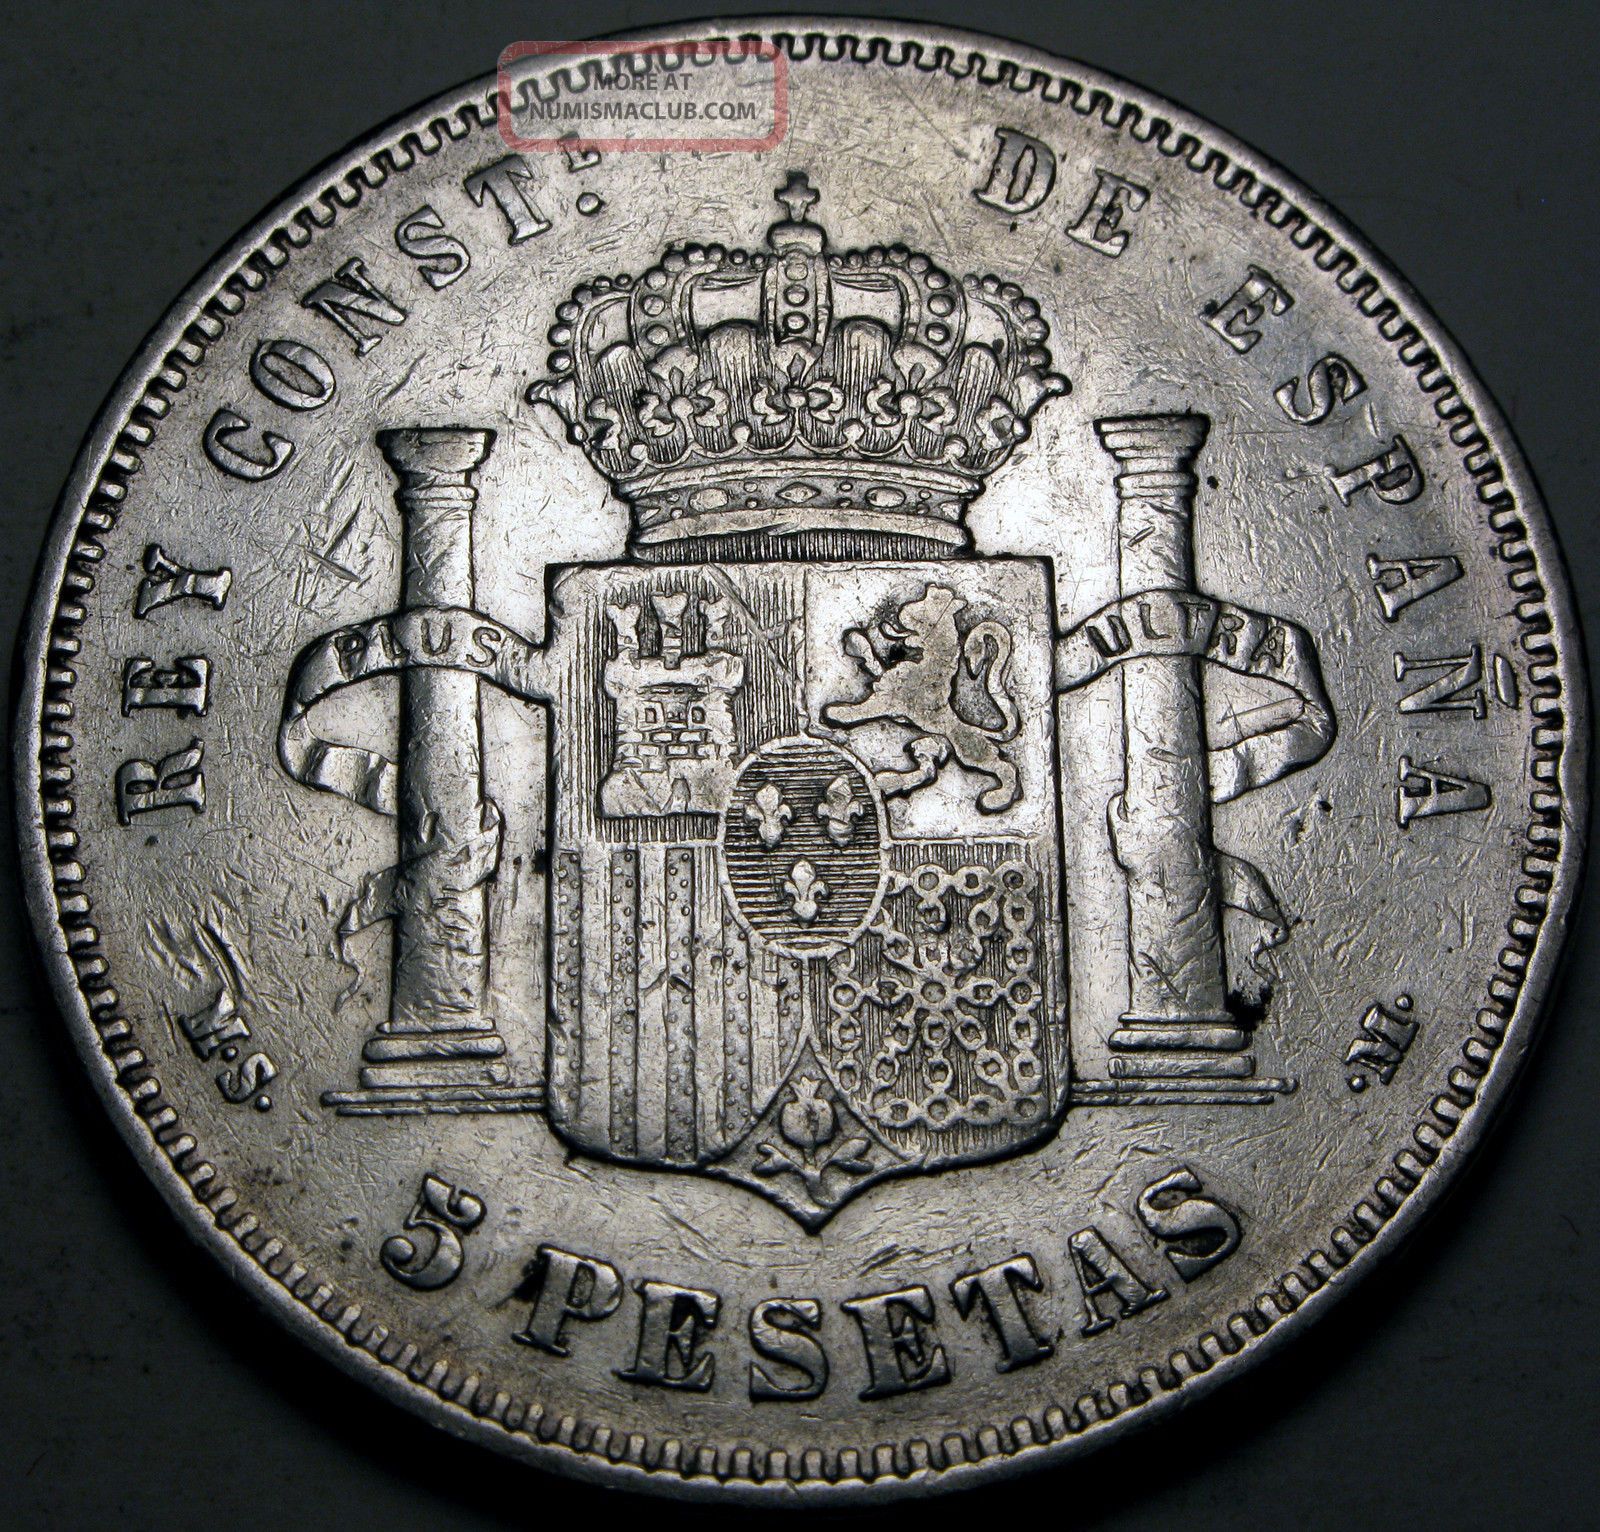 Spain (kingdom) 5 Pesetas 1885 (85) Ms - M - Silver - Alfonso Xii.